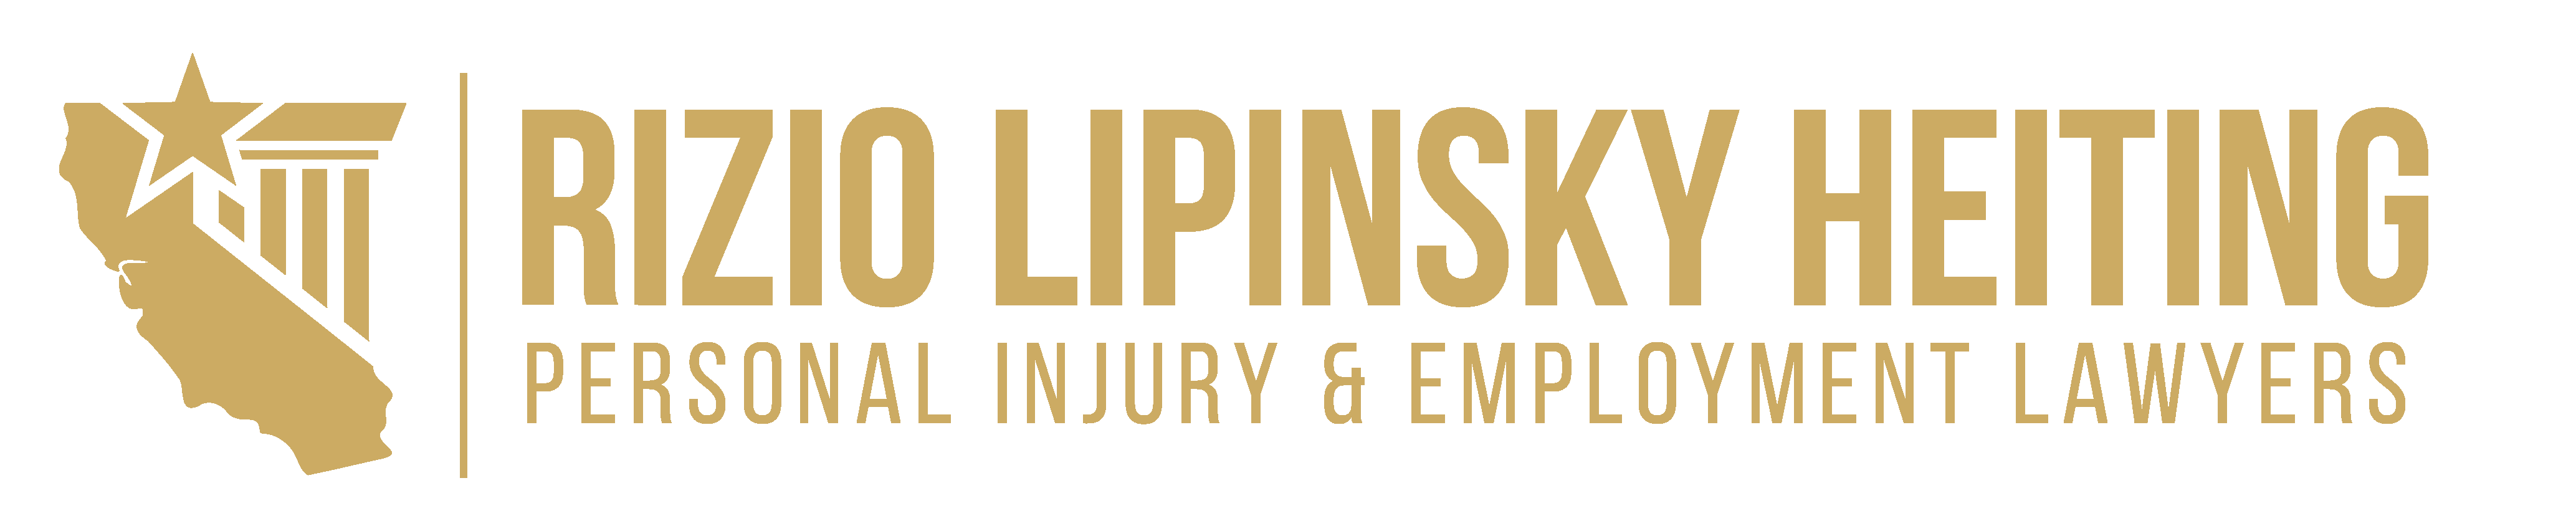 Personal Injury Lawyers Rizio Lipinsky Heiting Heiting Heiting Heiting